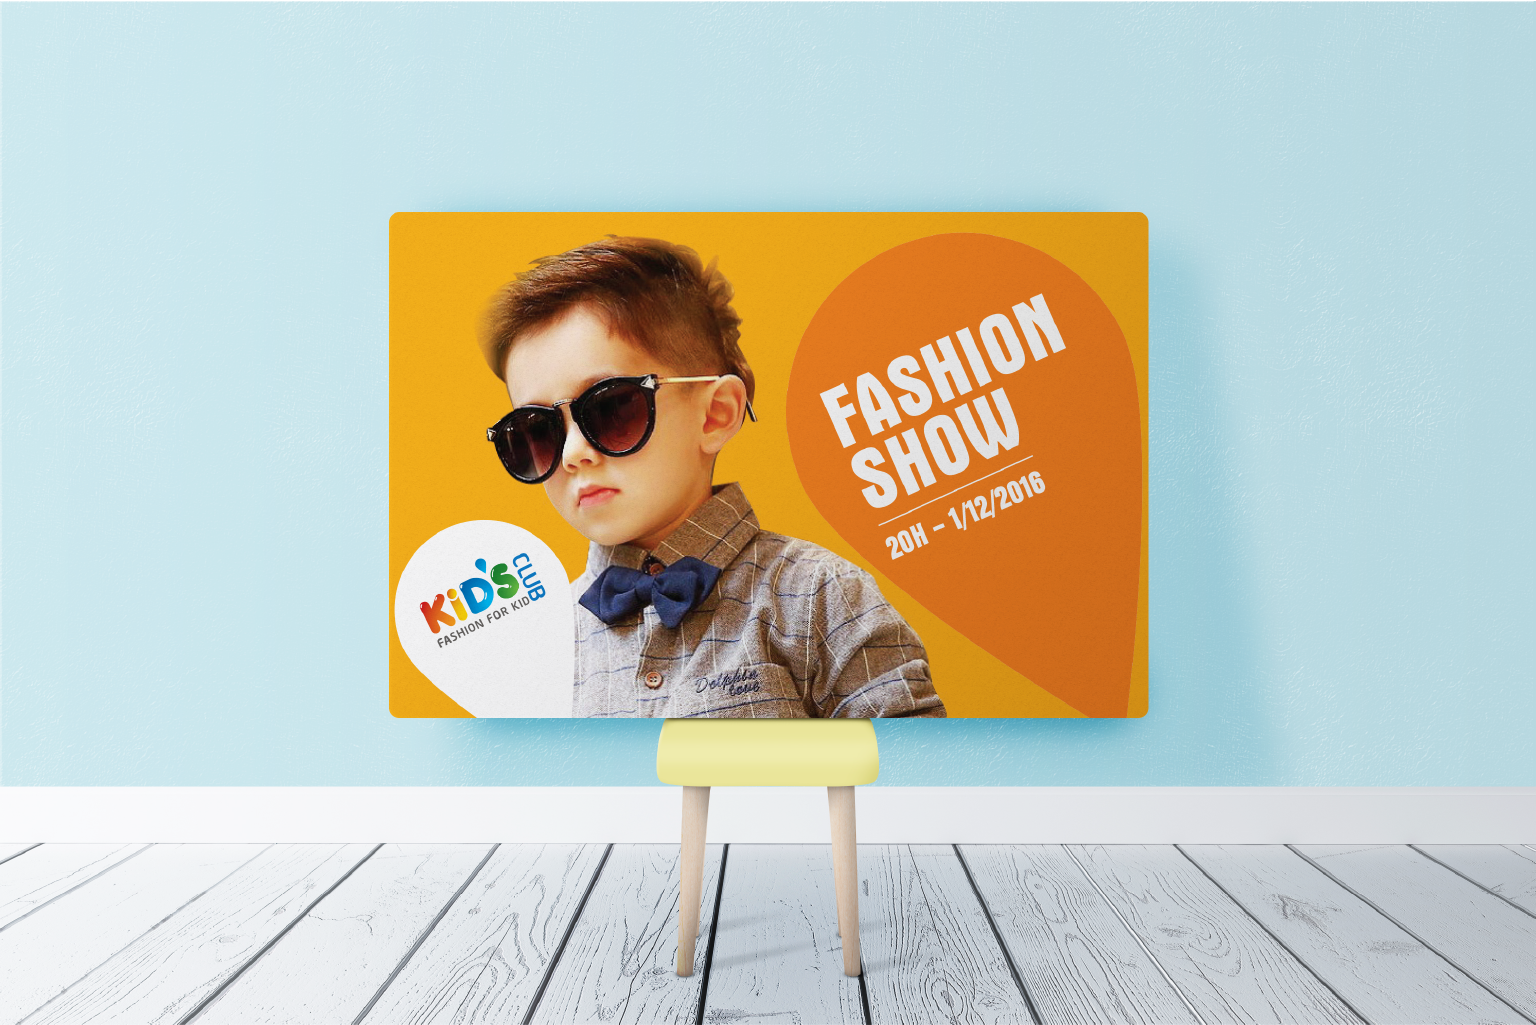 Kid's Club, Fashion for Kid, thời trang trẻ em, thương hiệu thời trang trẻ em, thiết kế thương hiệu thời trang trẻ em